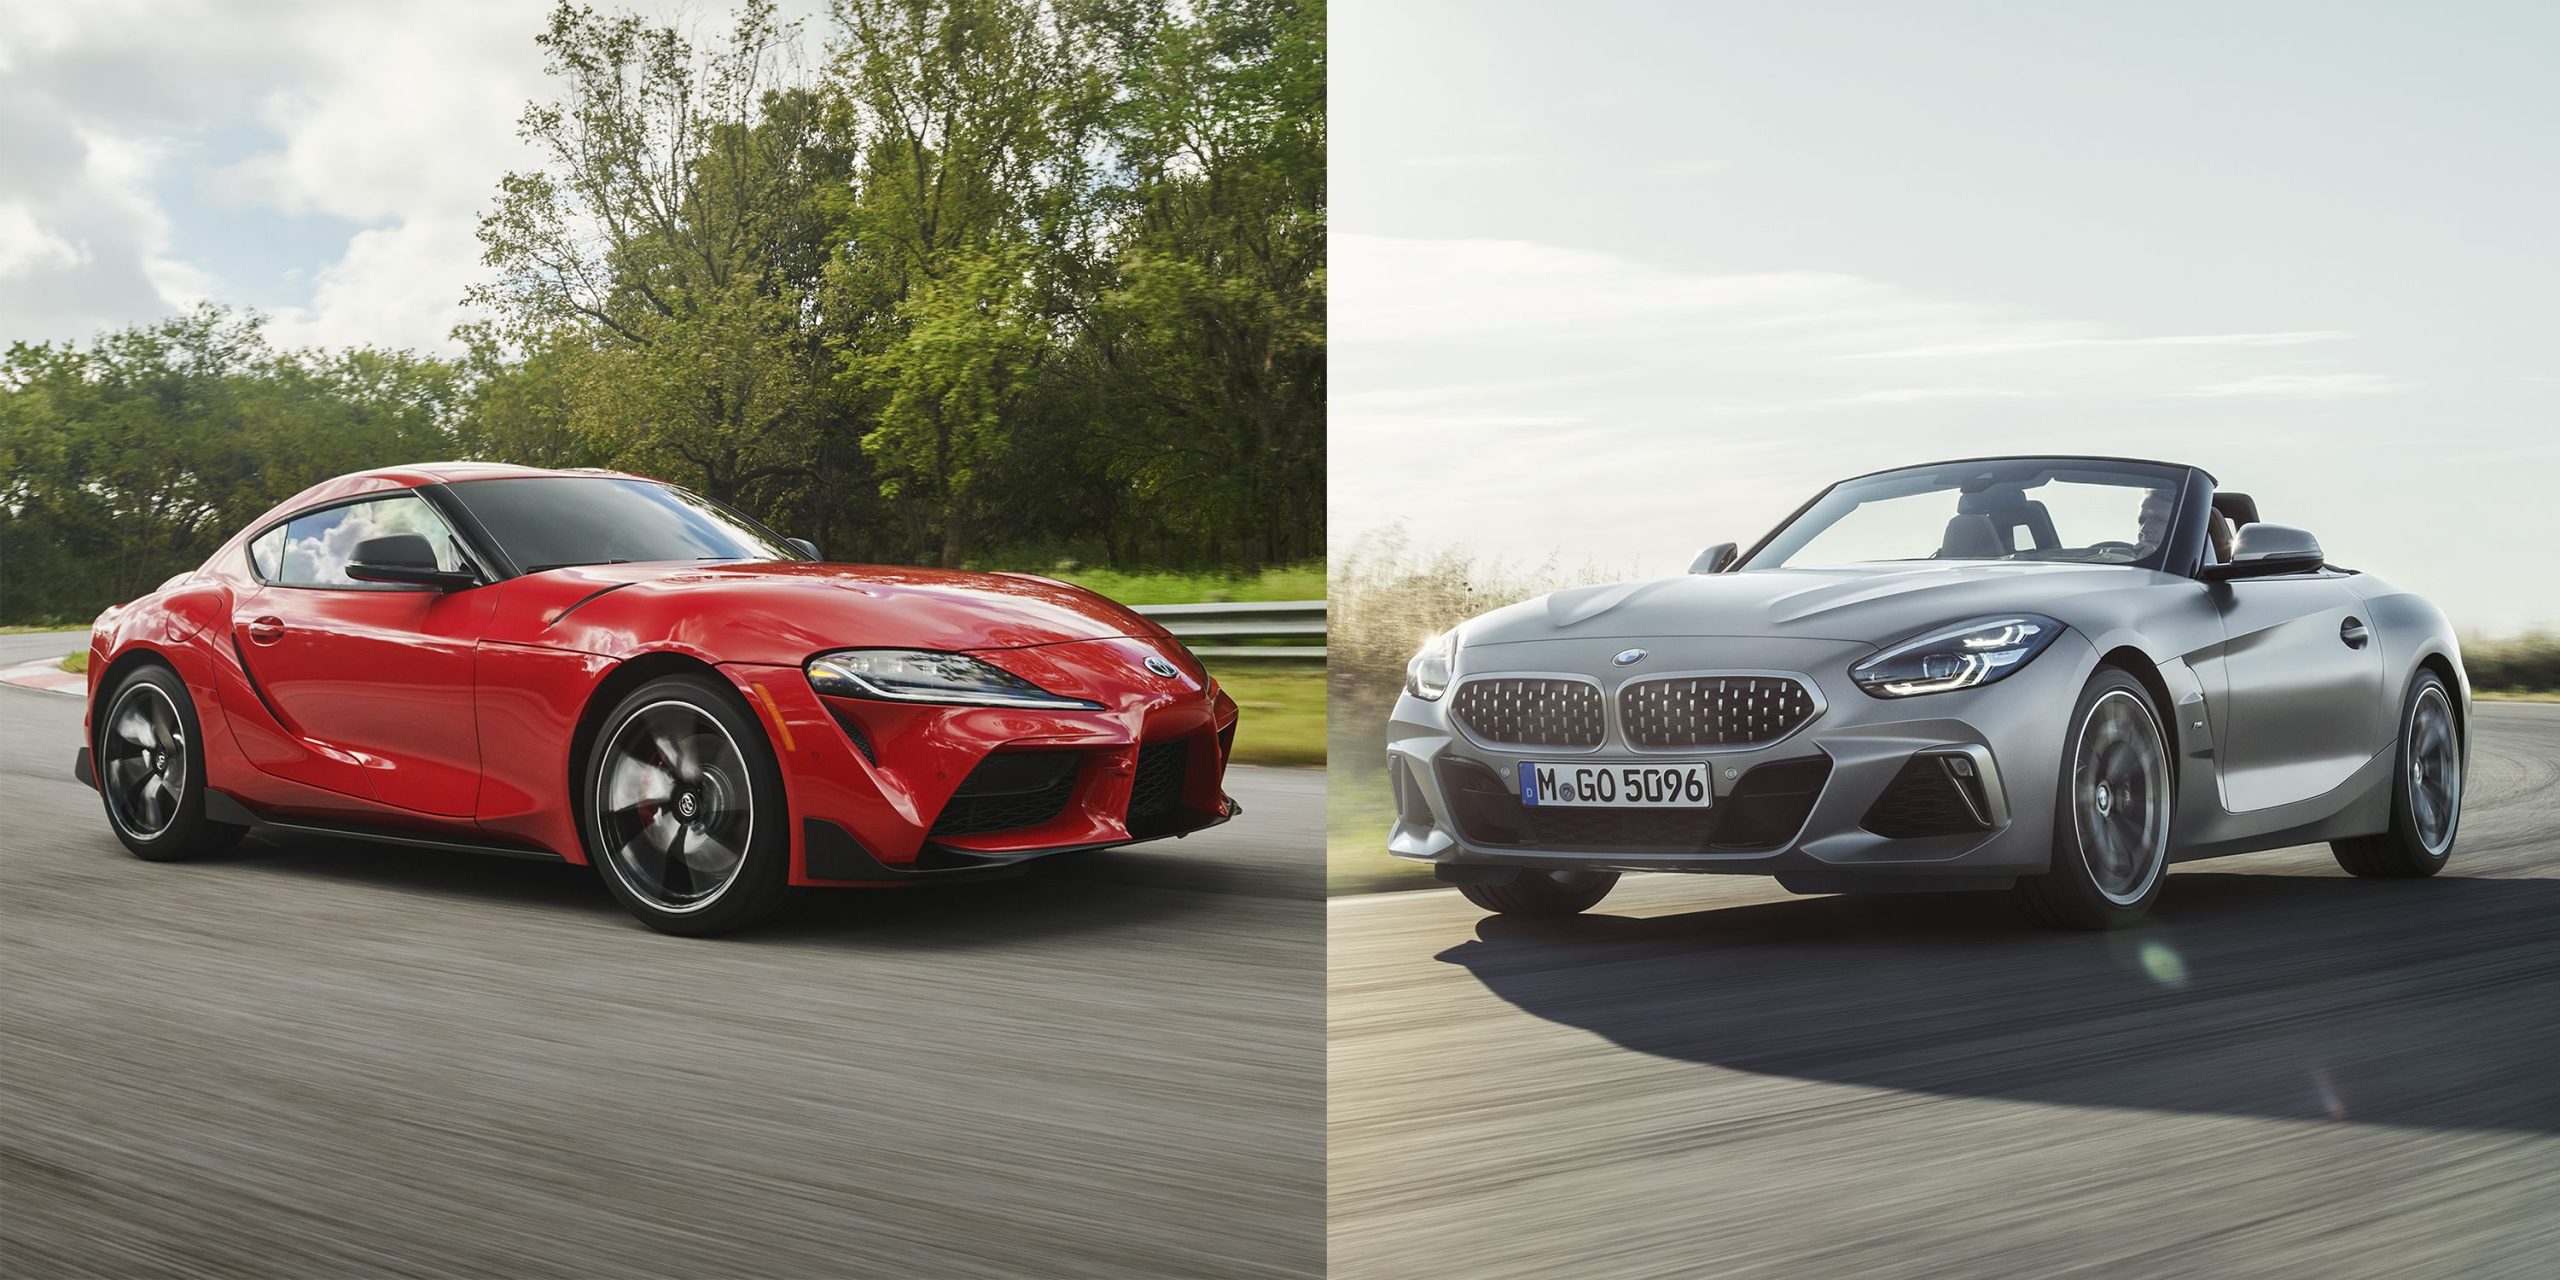 Fin de production annoncée pour la BMW Z4 et la Toyota Supra en 2026